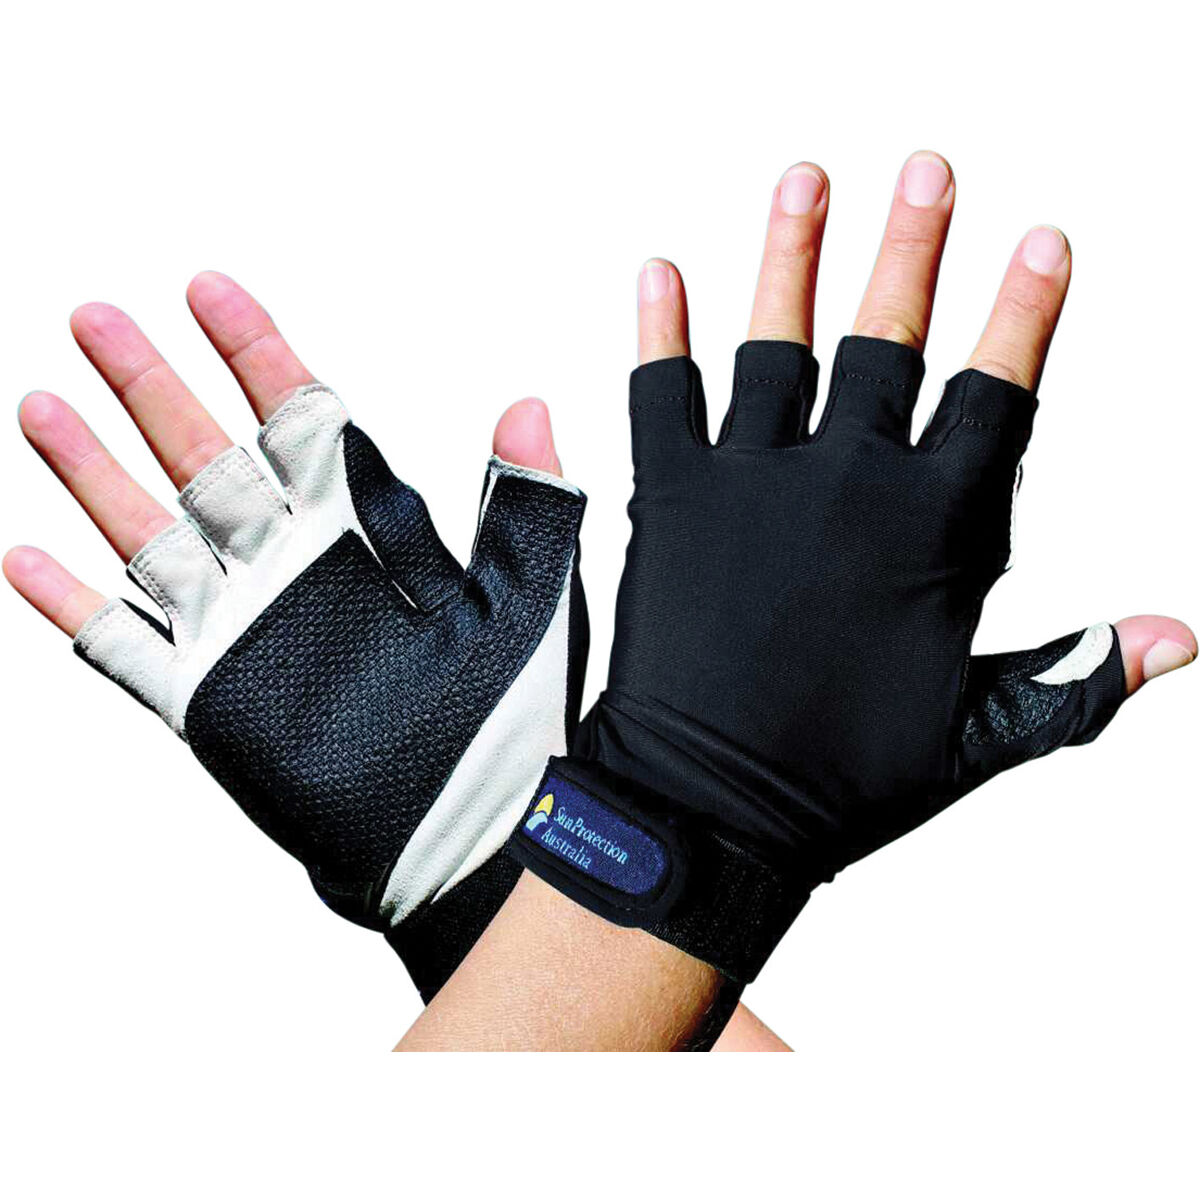 Sun Protection Uv Gloves Nylon Sun Protection Gloves Black Missing